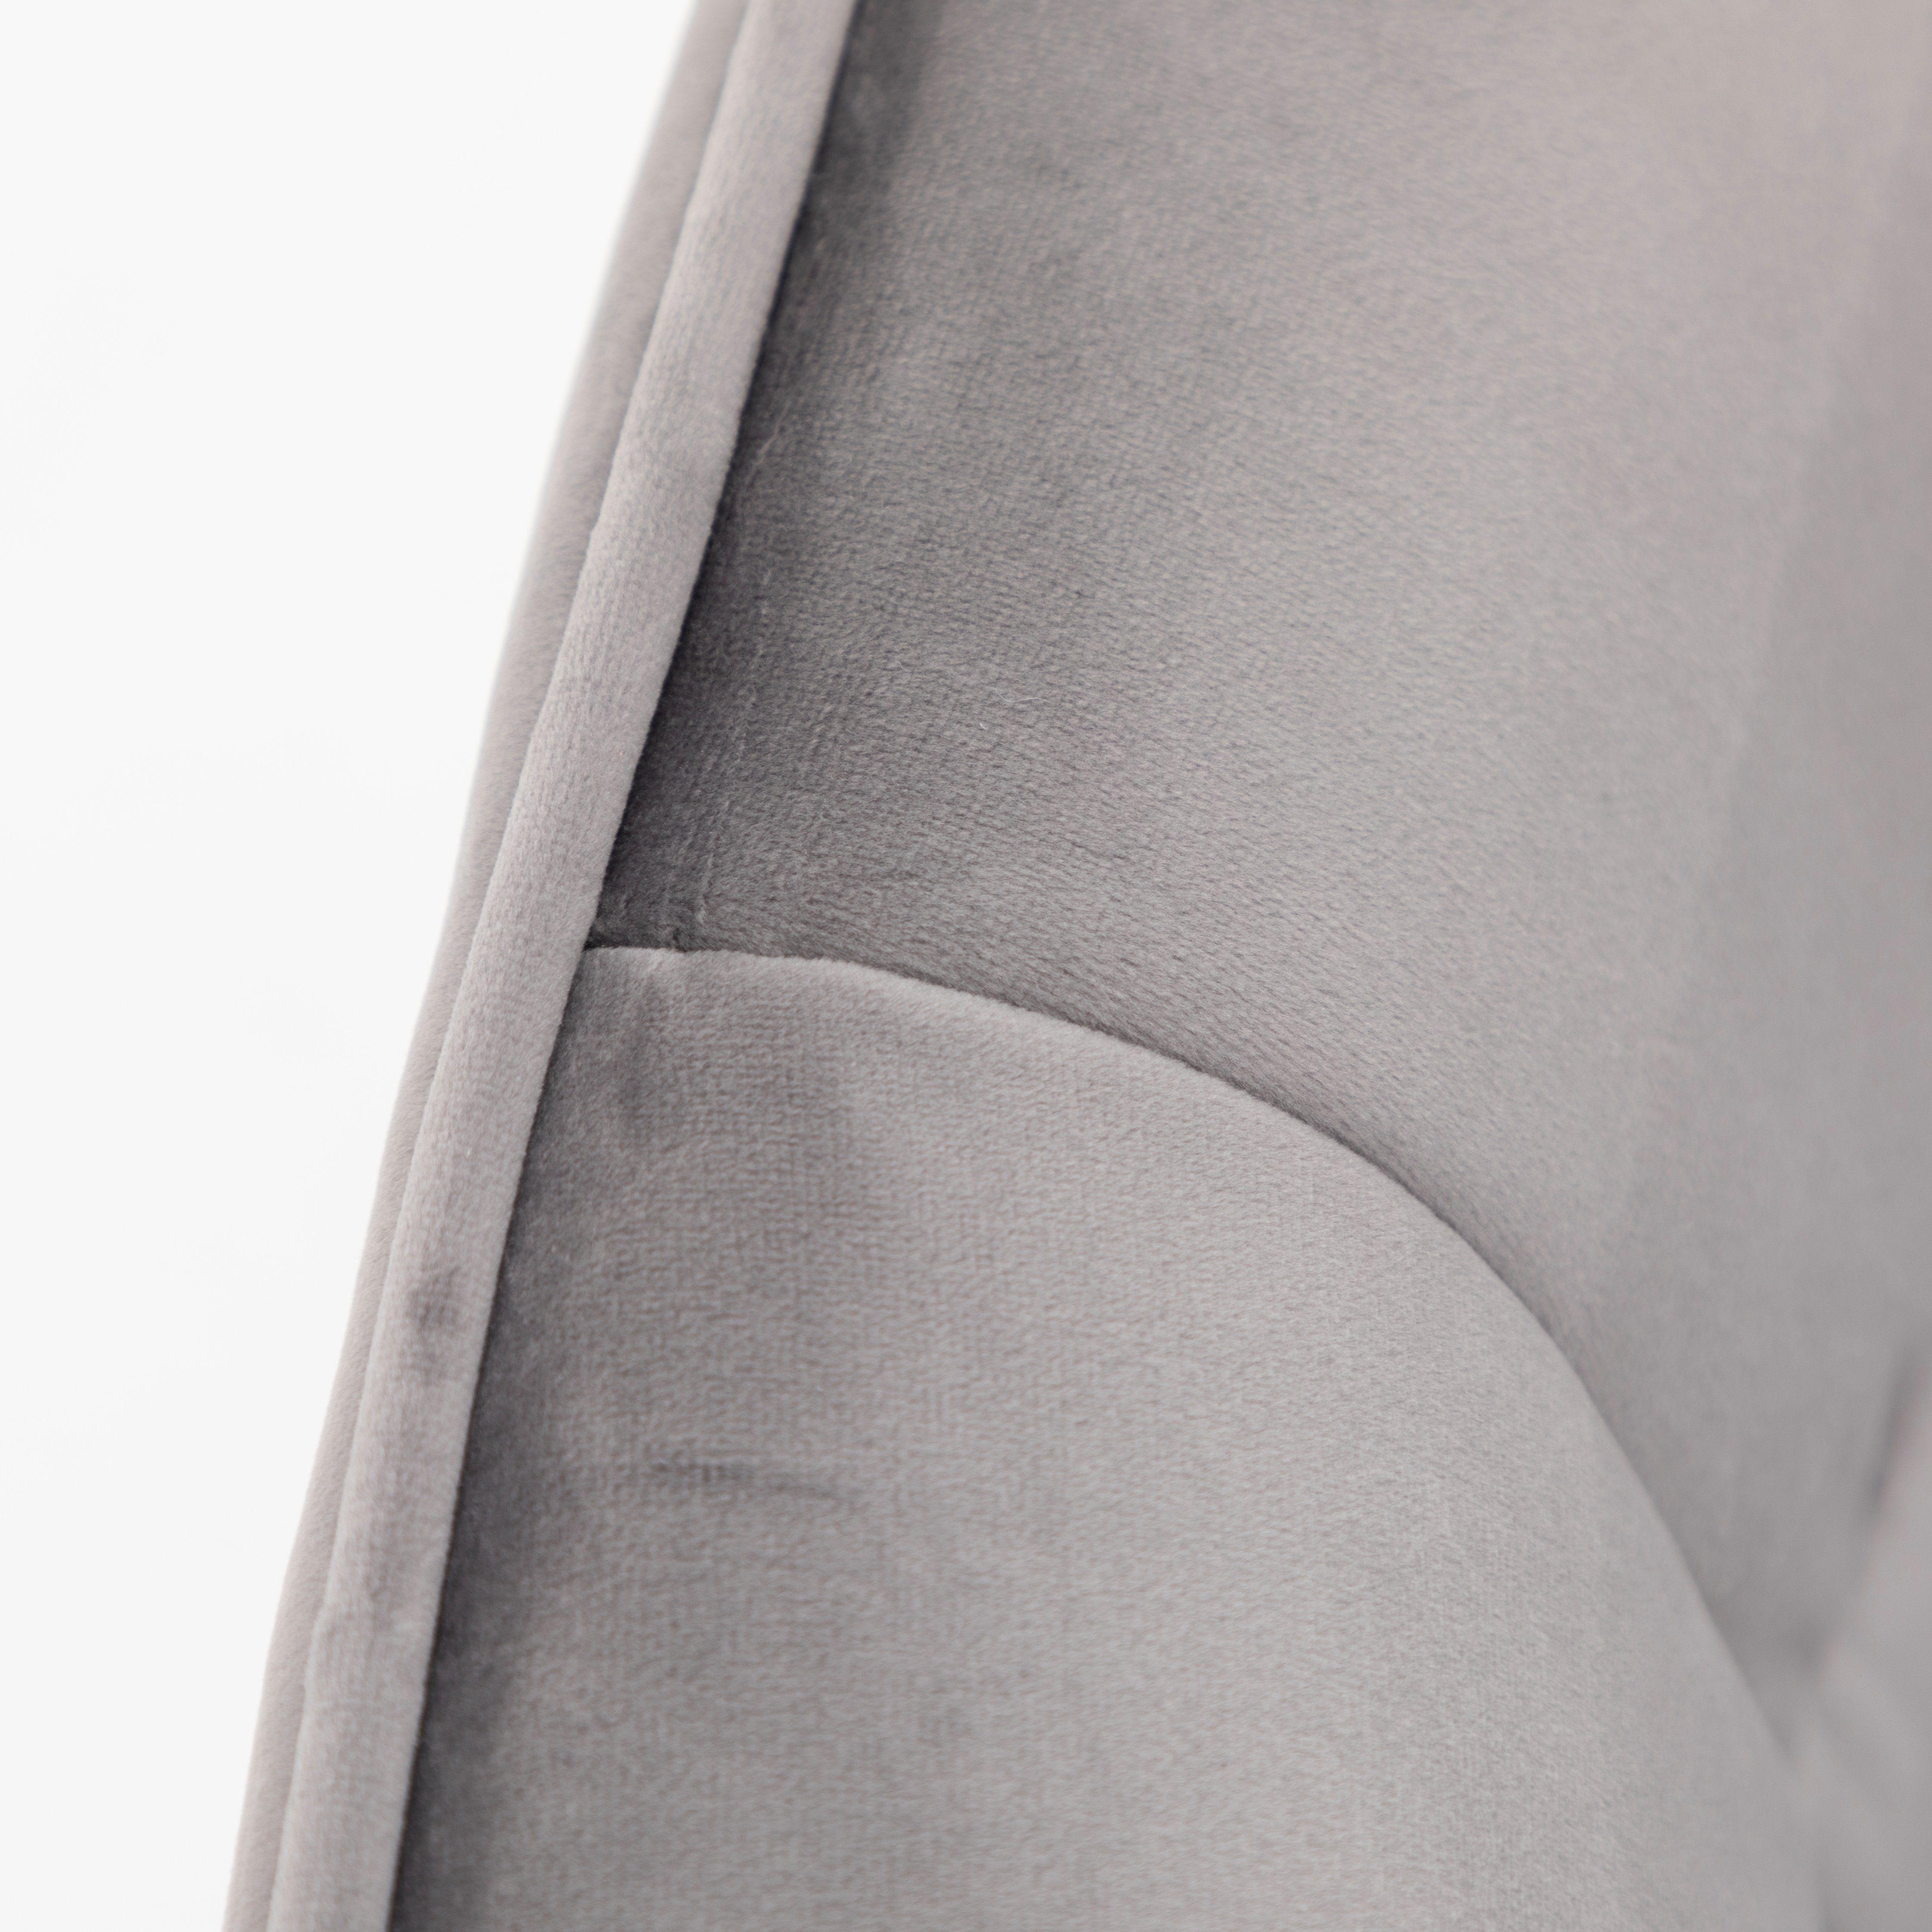 Ulife schwarze | St), 44×55×91cm Metallbeine,360° Samt, grau höhenverstellbar Bürostuhl Drehstuhl drehbar, mit aus (1 Beine